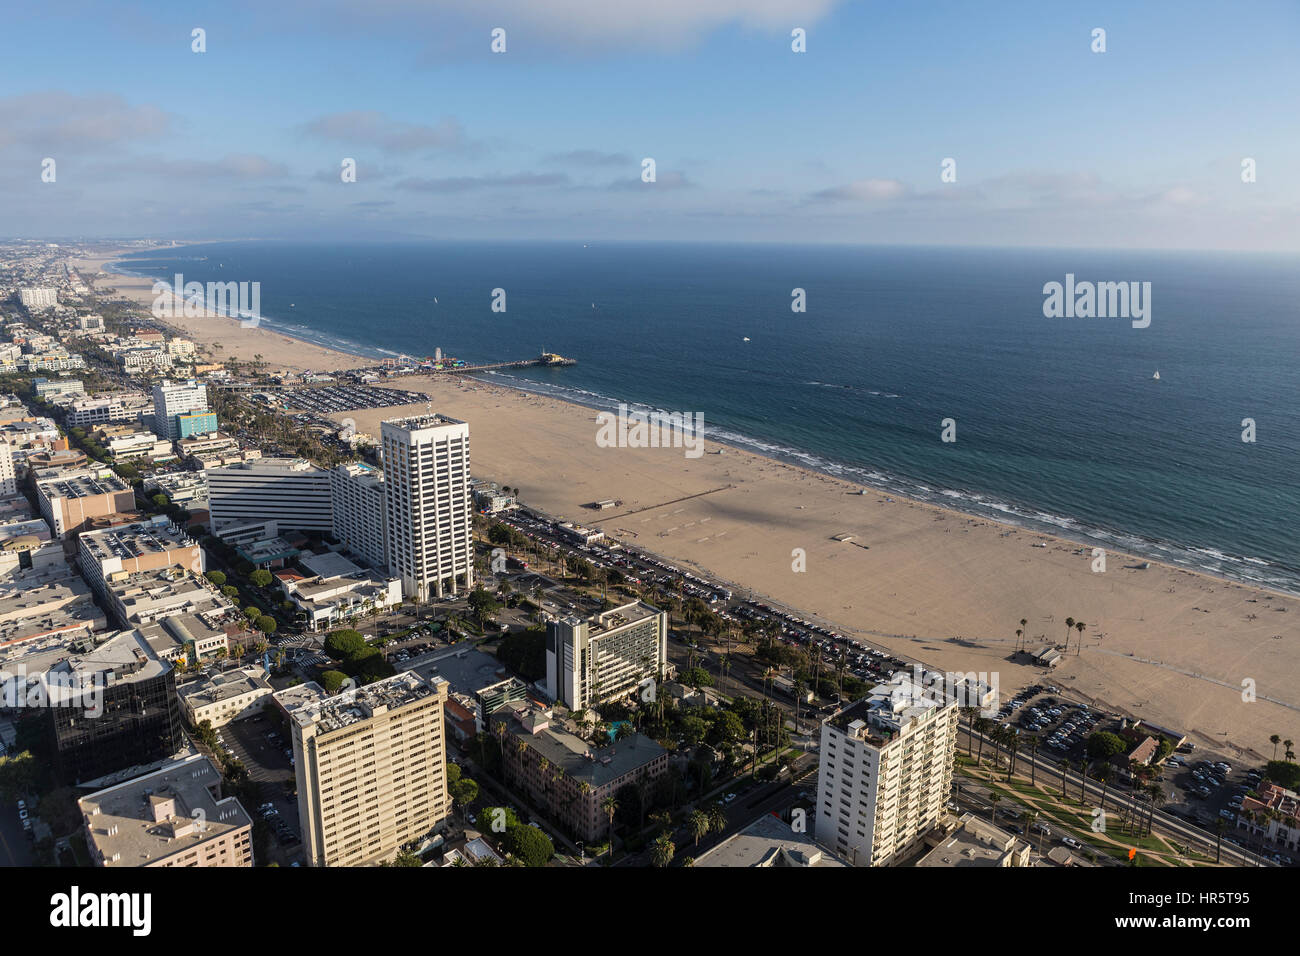 Santa Monica, Californie, USA - 6 août 2016 : après-midi d'été vue aérienne du quartier des affaires de Santa Monica et de la plage, près de Los Angeles. Banque D'Images